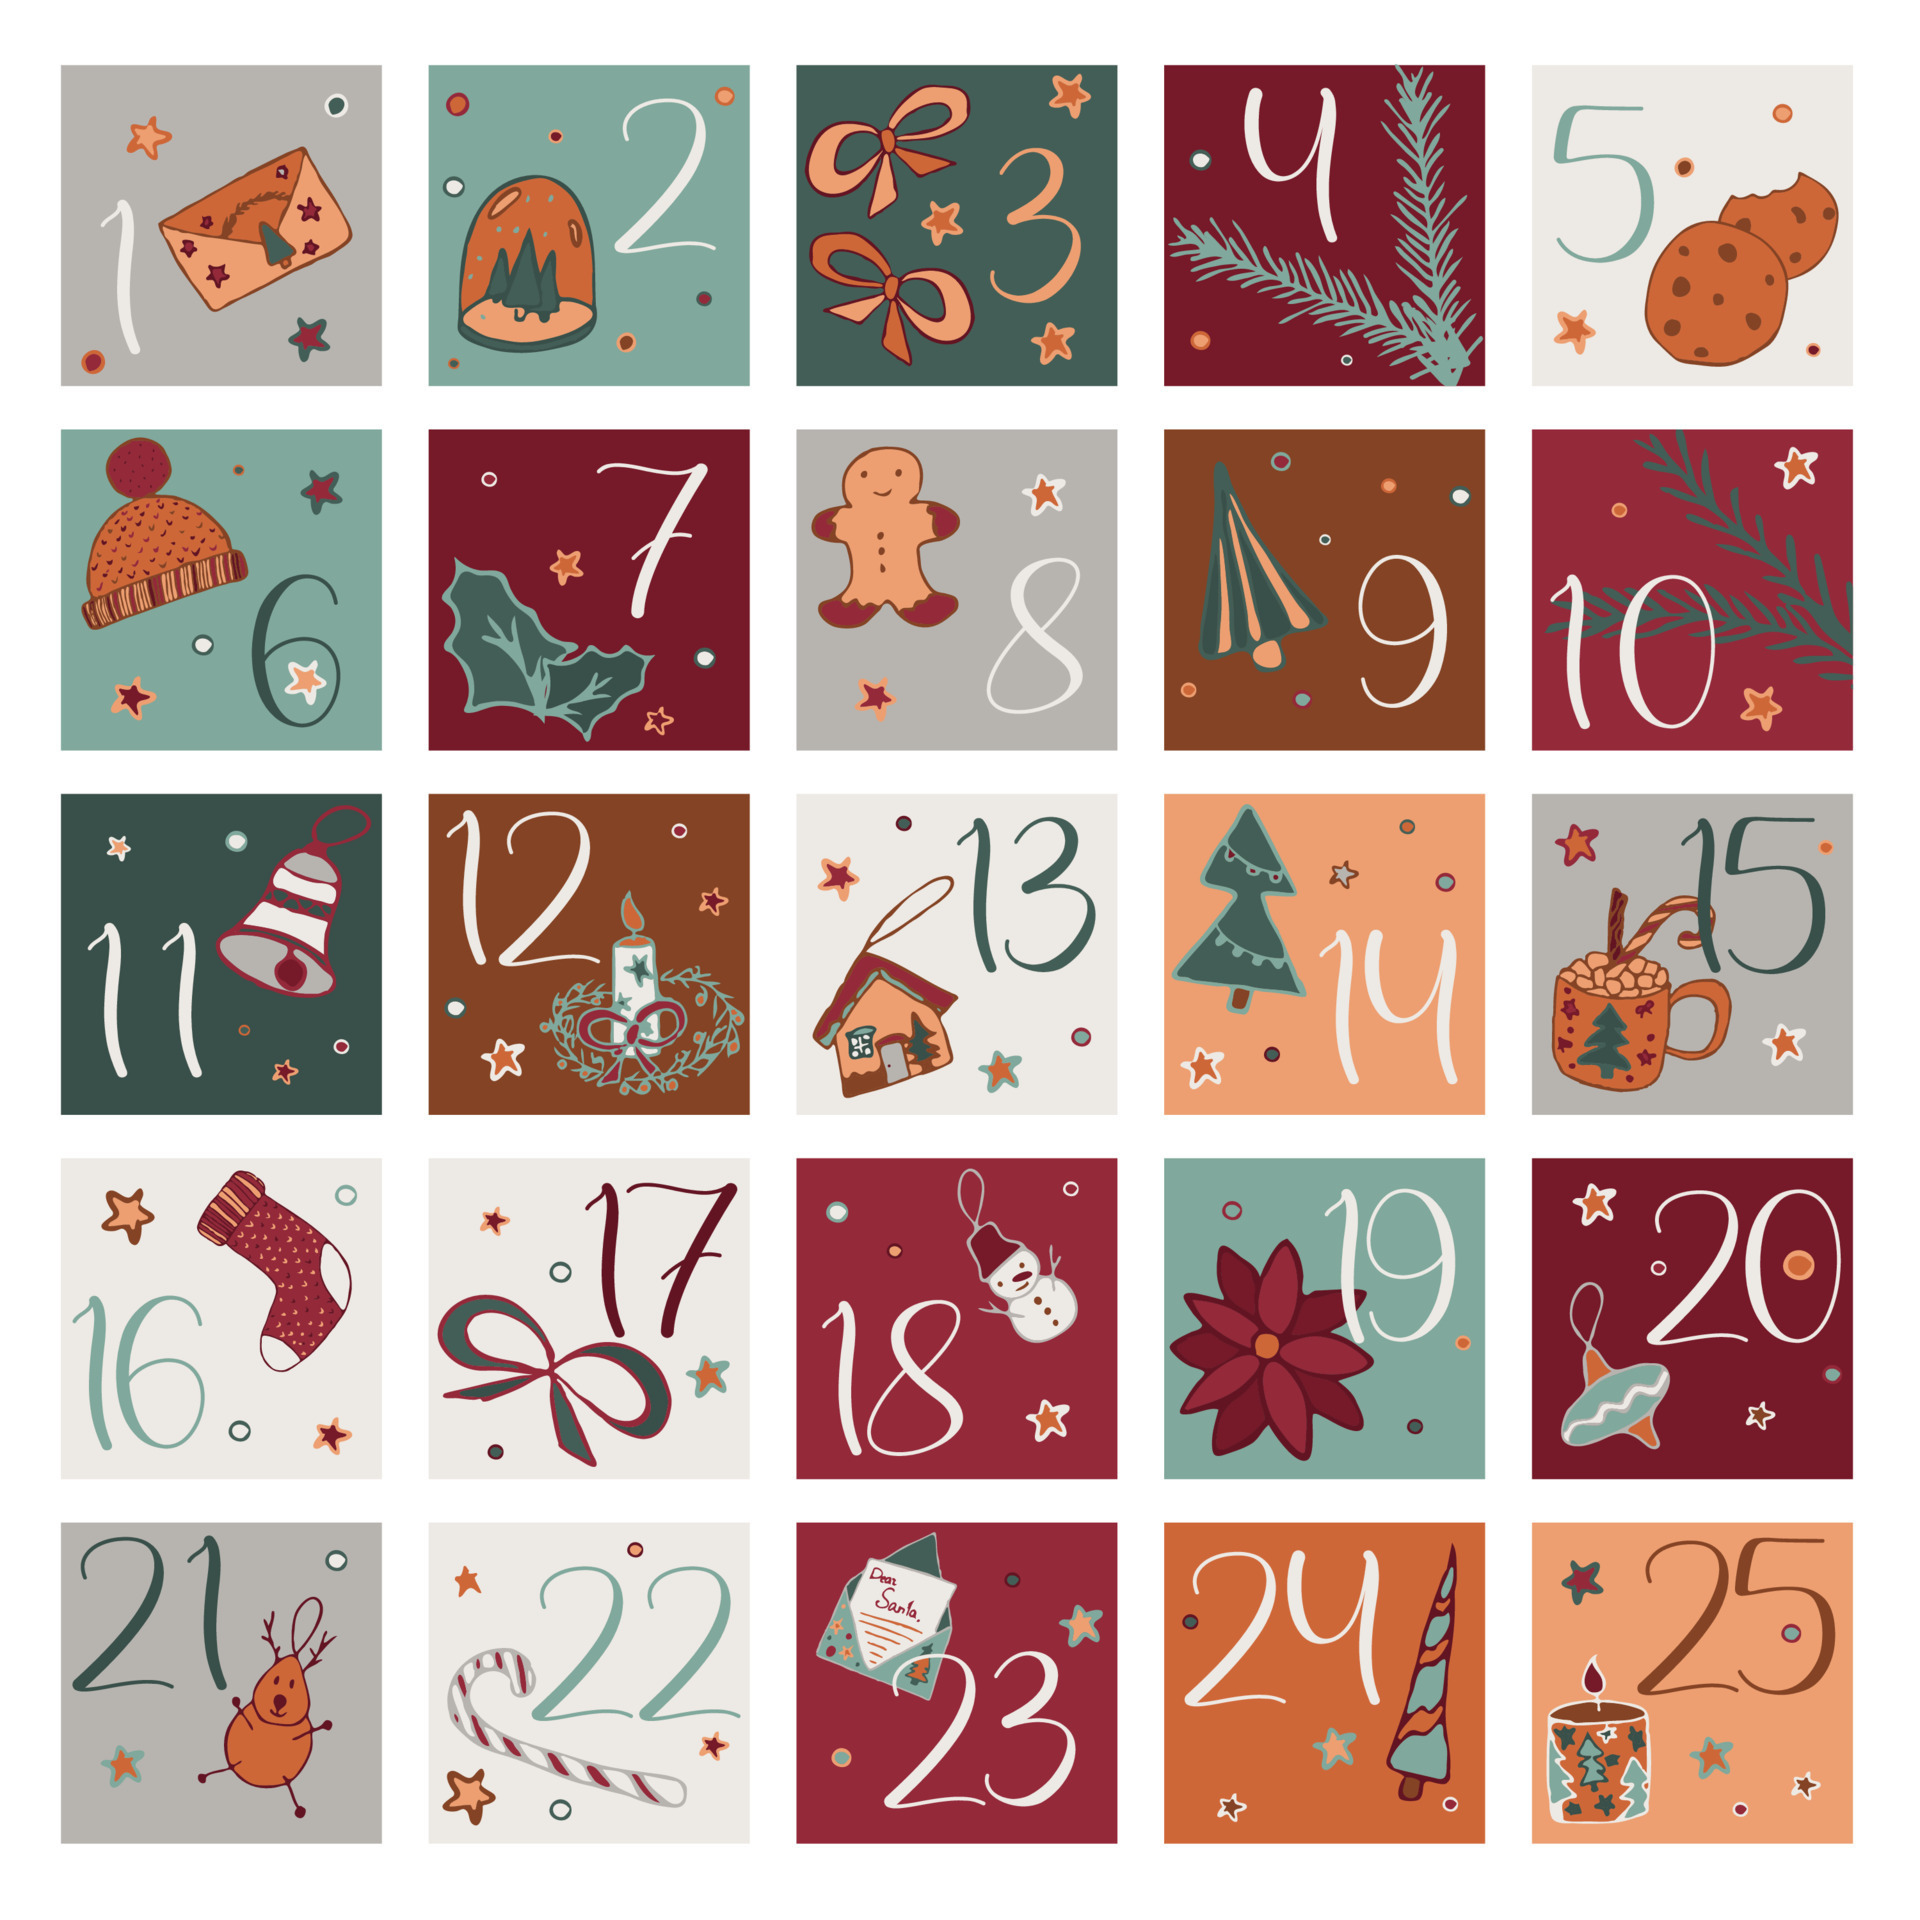 adesivos quadrados de calendário do advento de natal prontos para imprimir.  tags de caixa de presente para decoração de contagem regressiva 11116289  Vetor no Vecteezy